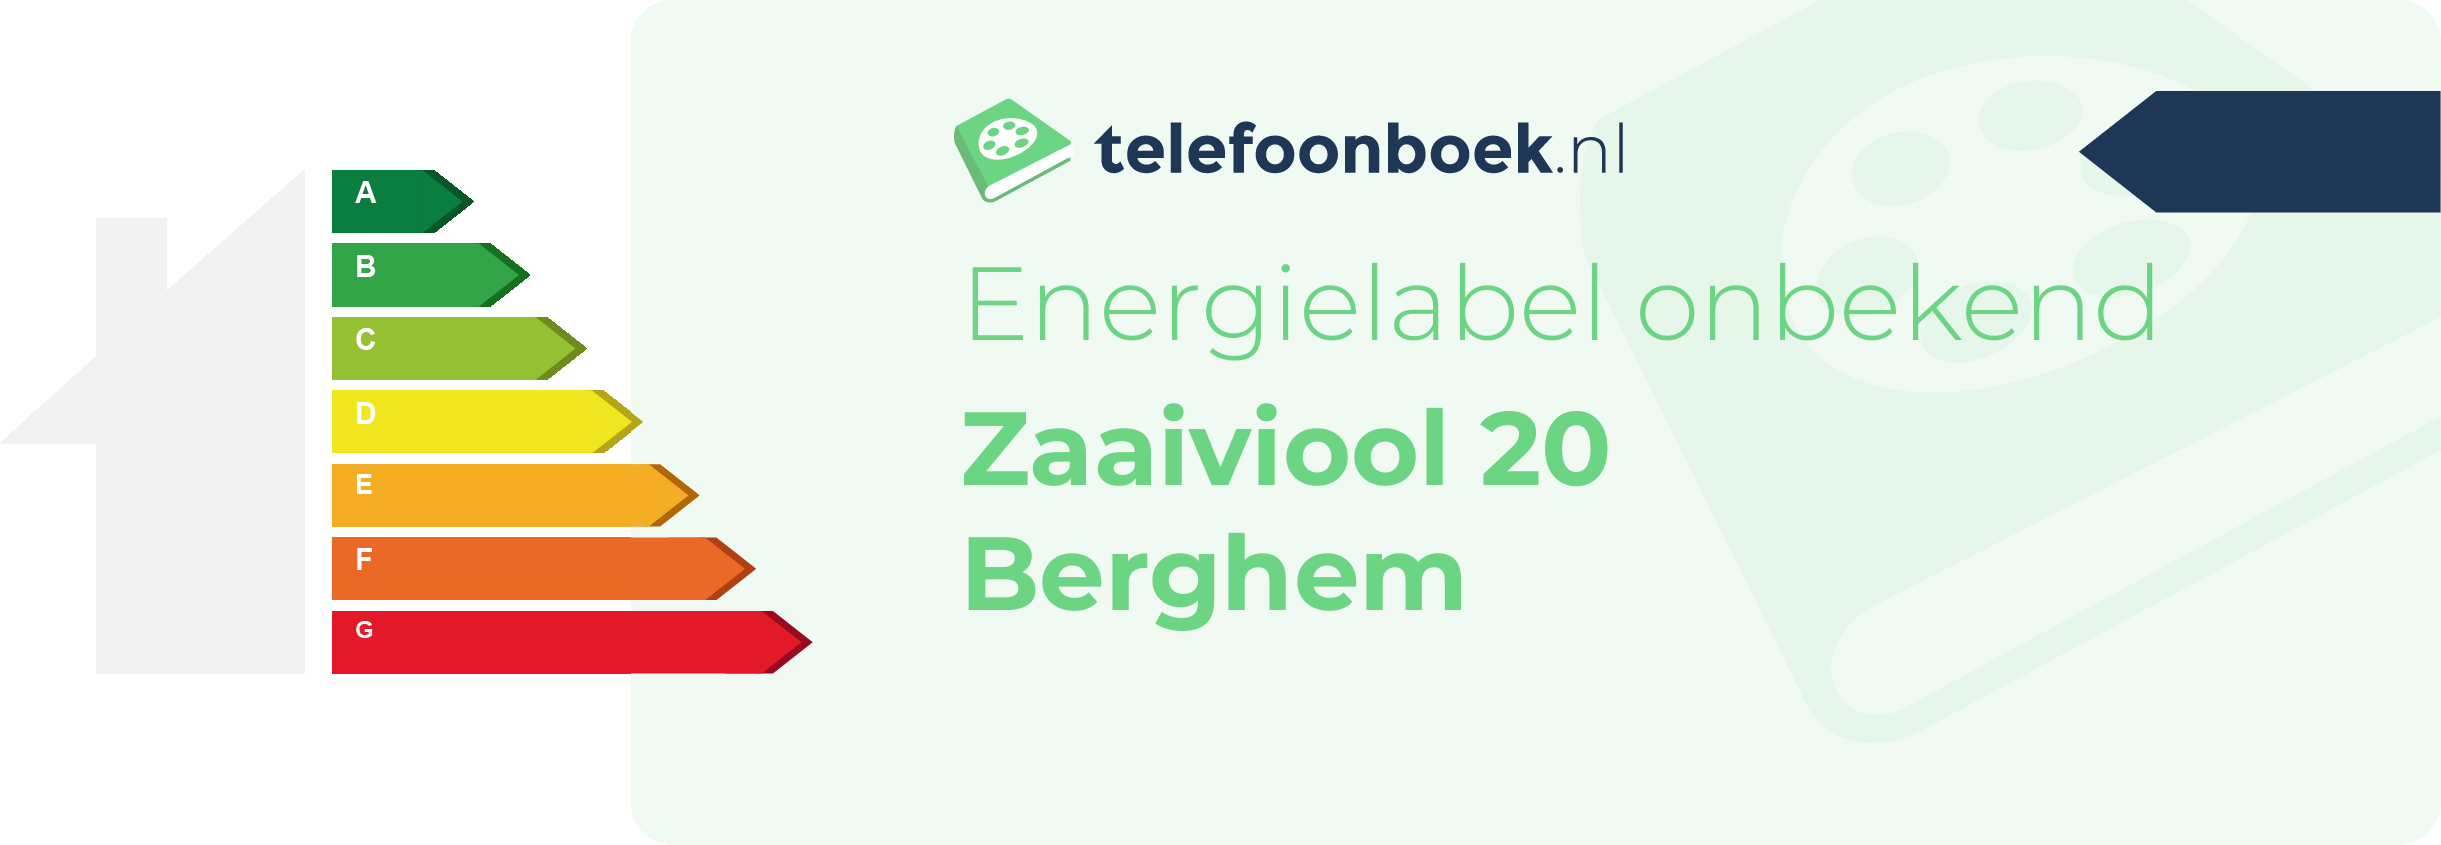 Energielabel Zaaiviool 20 Berghem